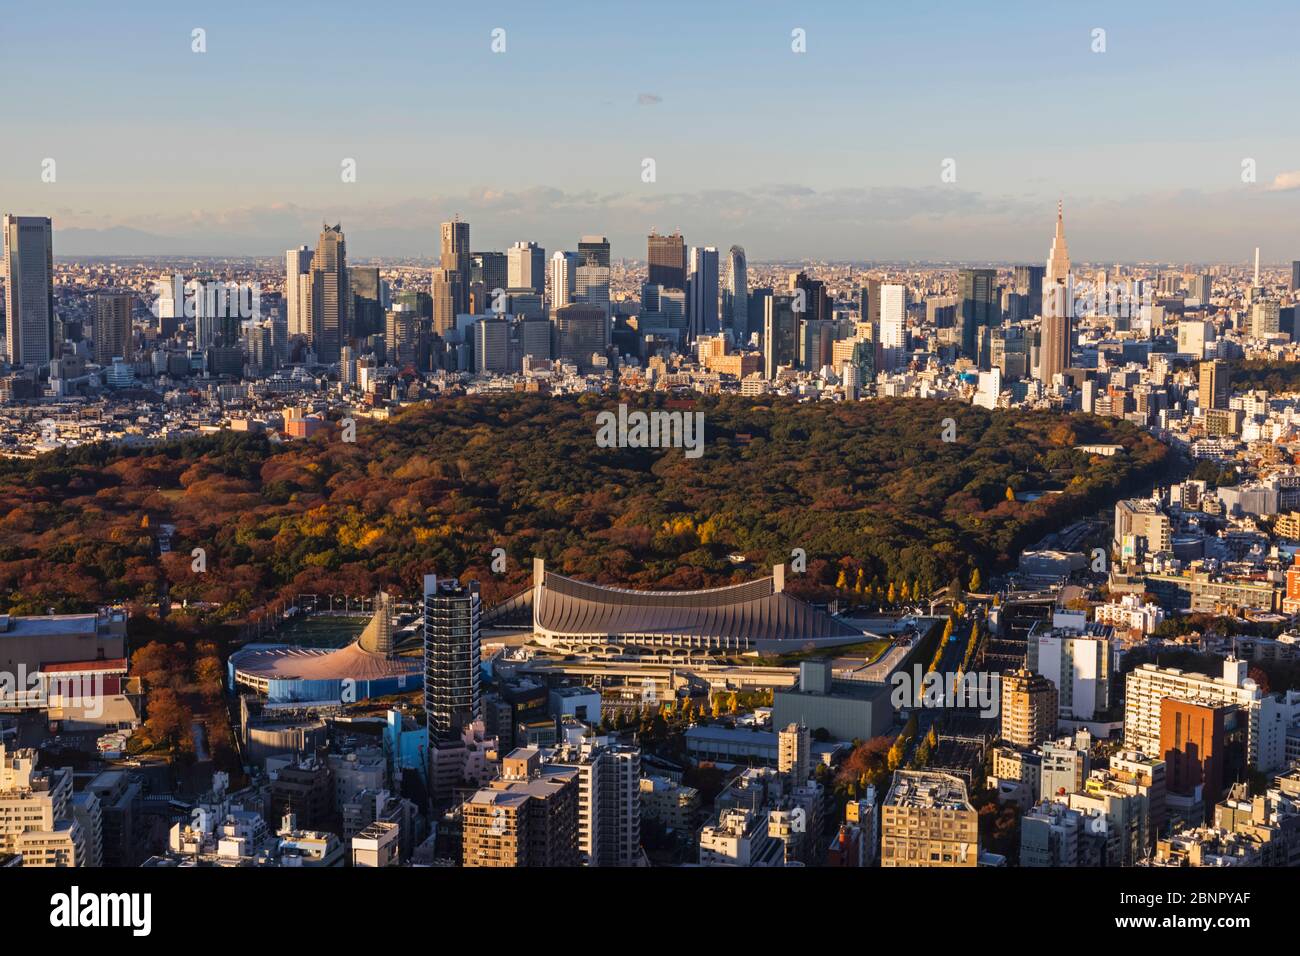 Giappone, Honshu, Tokyo, Shibuya, Vista Dello Skyline Di Shinjuku Dall'Area Panoramica Dell'Edificio Shibuya Scramble Square Foto Stock